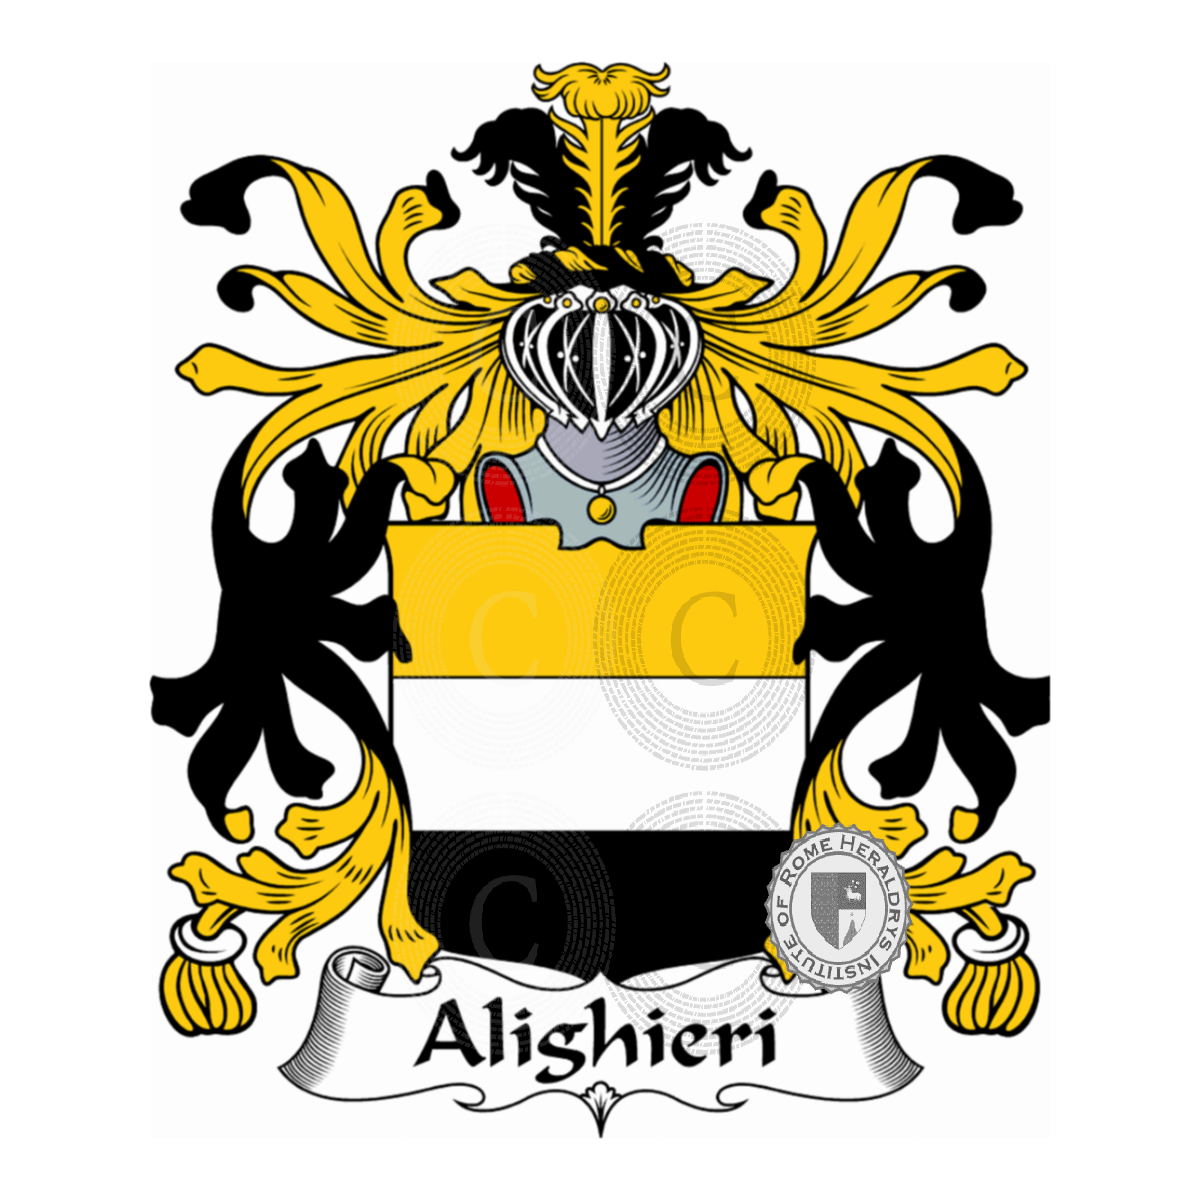 Brasão da famíliaAlighieri, Aldigieri